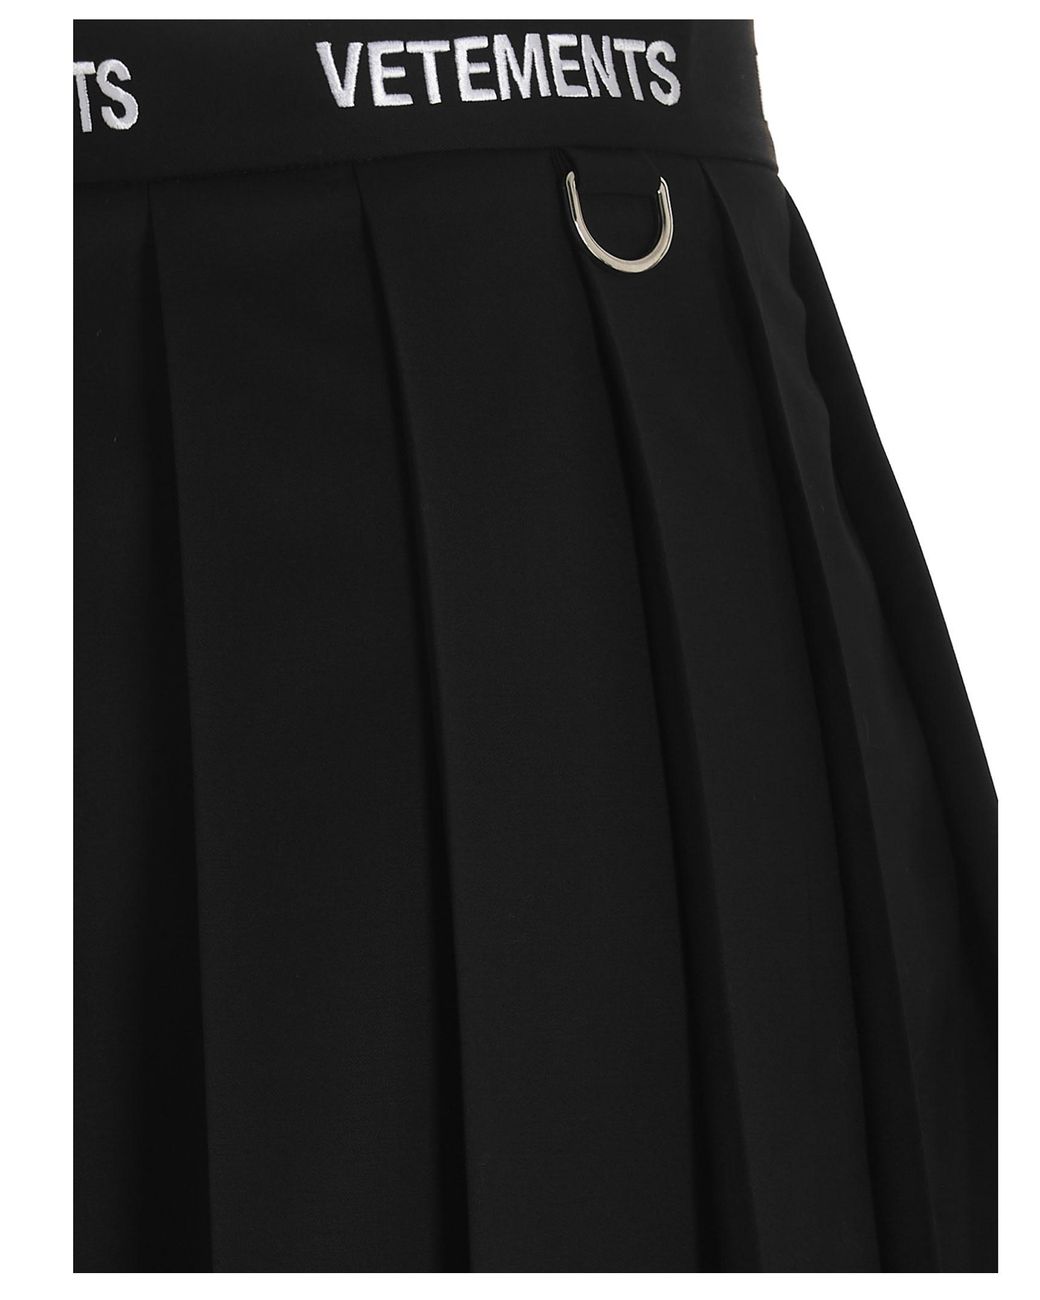 Vetements Schoolgirl Skirt in Black | Lyst